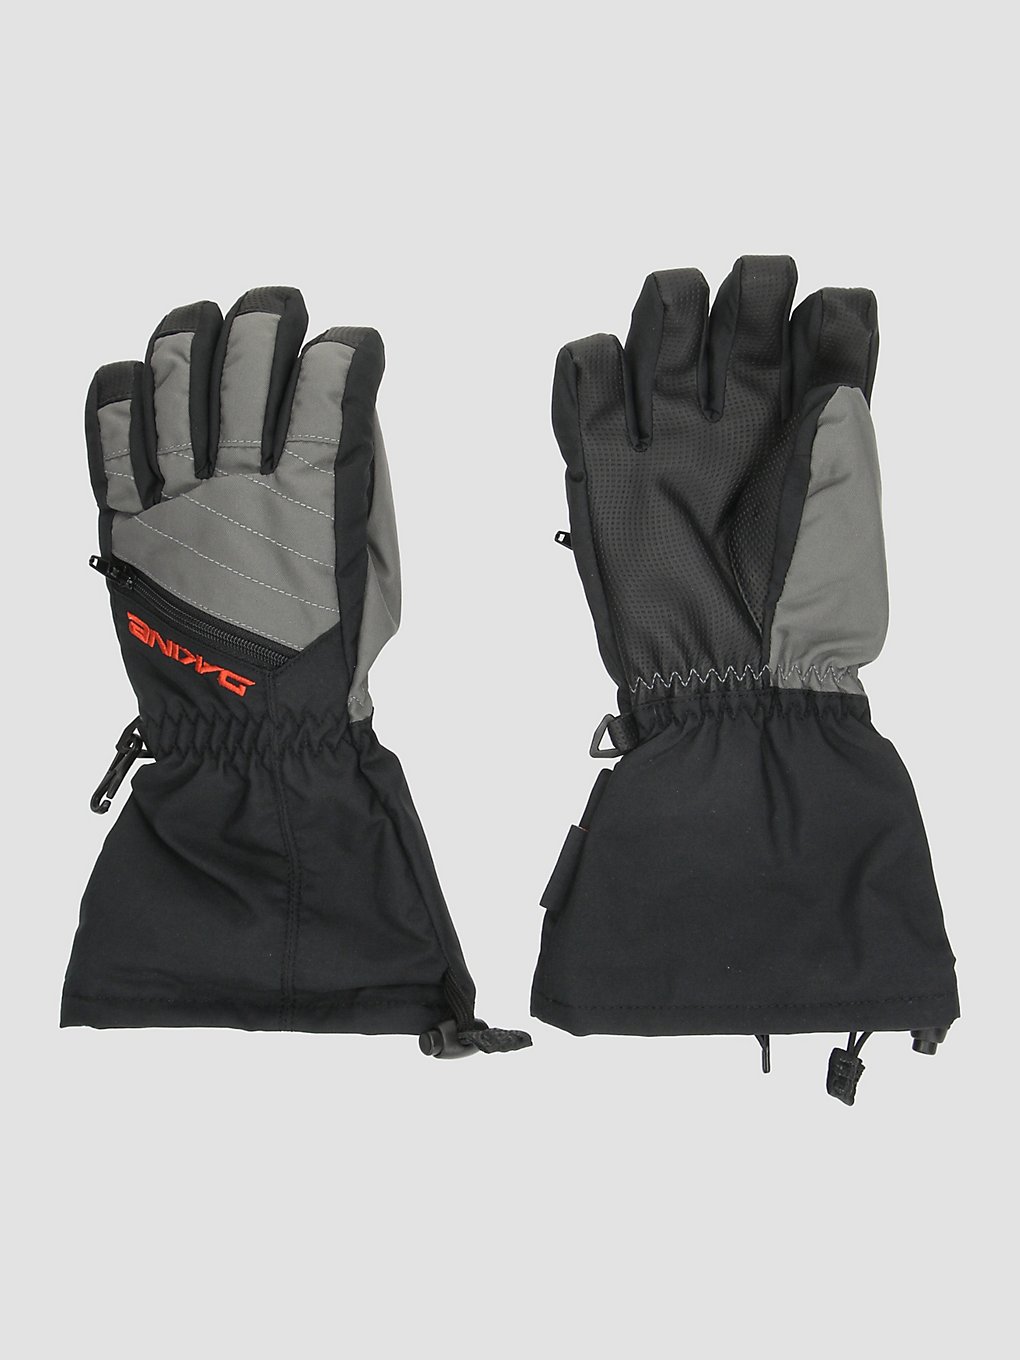 Dakine Tracker Handschuhe steel grey kaufen